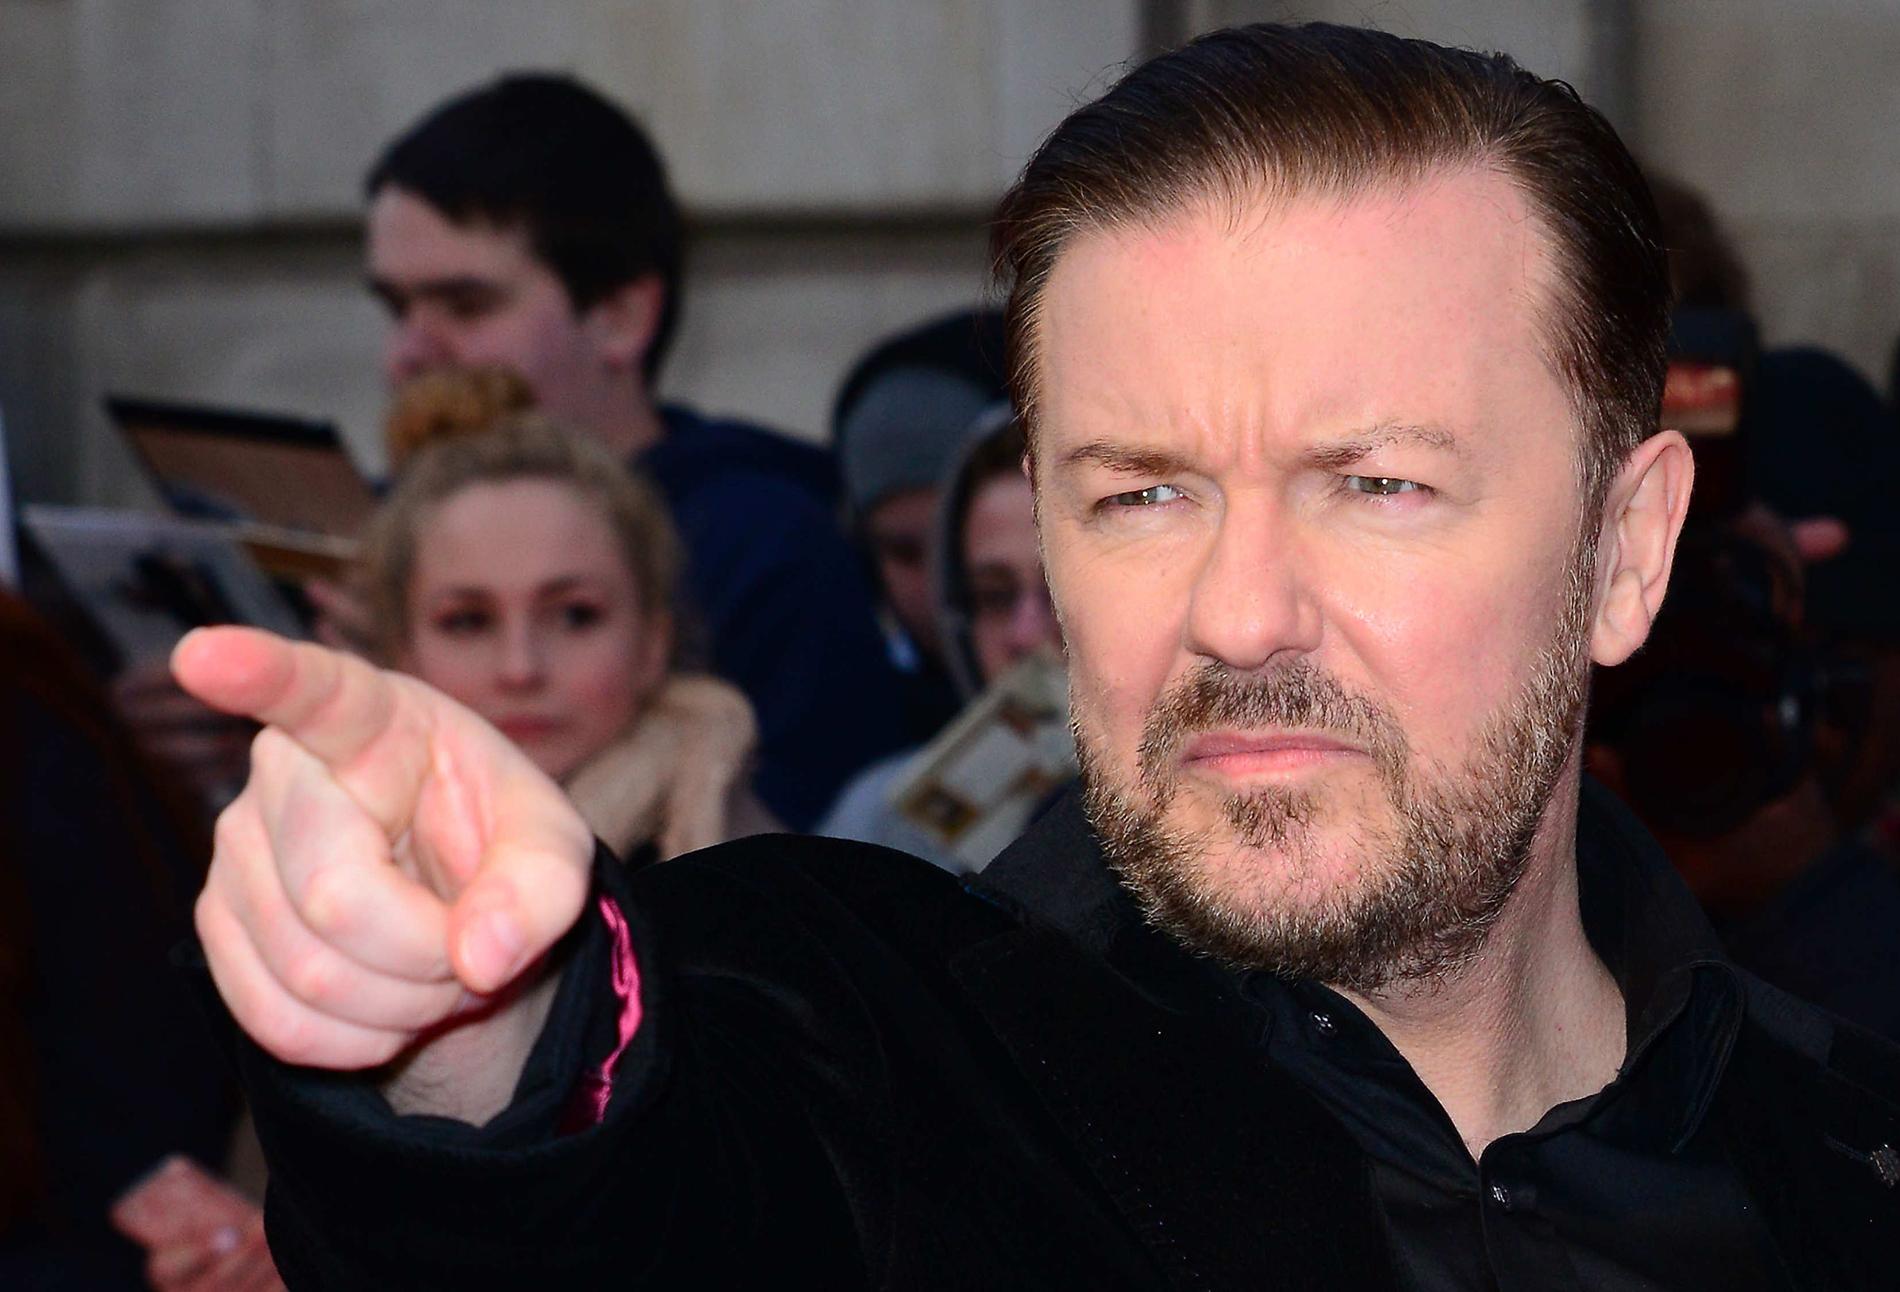 Efter den dödade kaninen i dansk radio – nu rasar även komikern, skådespelaren och regissören Ricky Gervais, som tidigare bland annat tagit ställning mot jägare.
”Jag misshandlade en dansk dj till döds med en cykelpump för att visa hur hemskt mord är”, skriver han på Twitter.